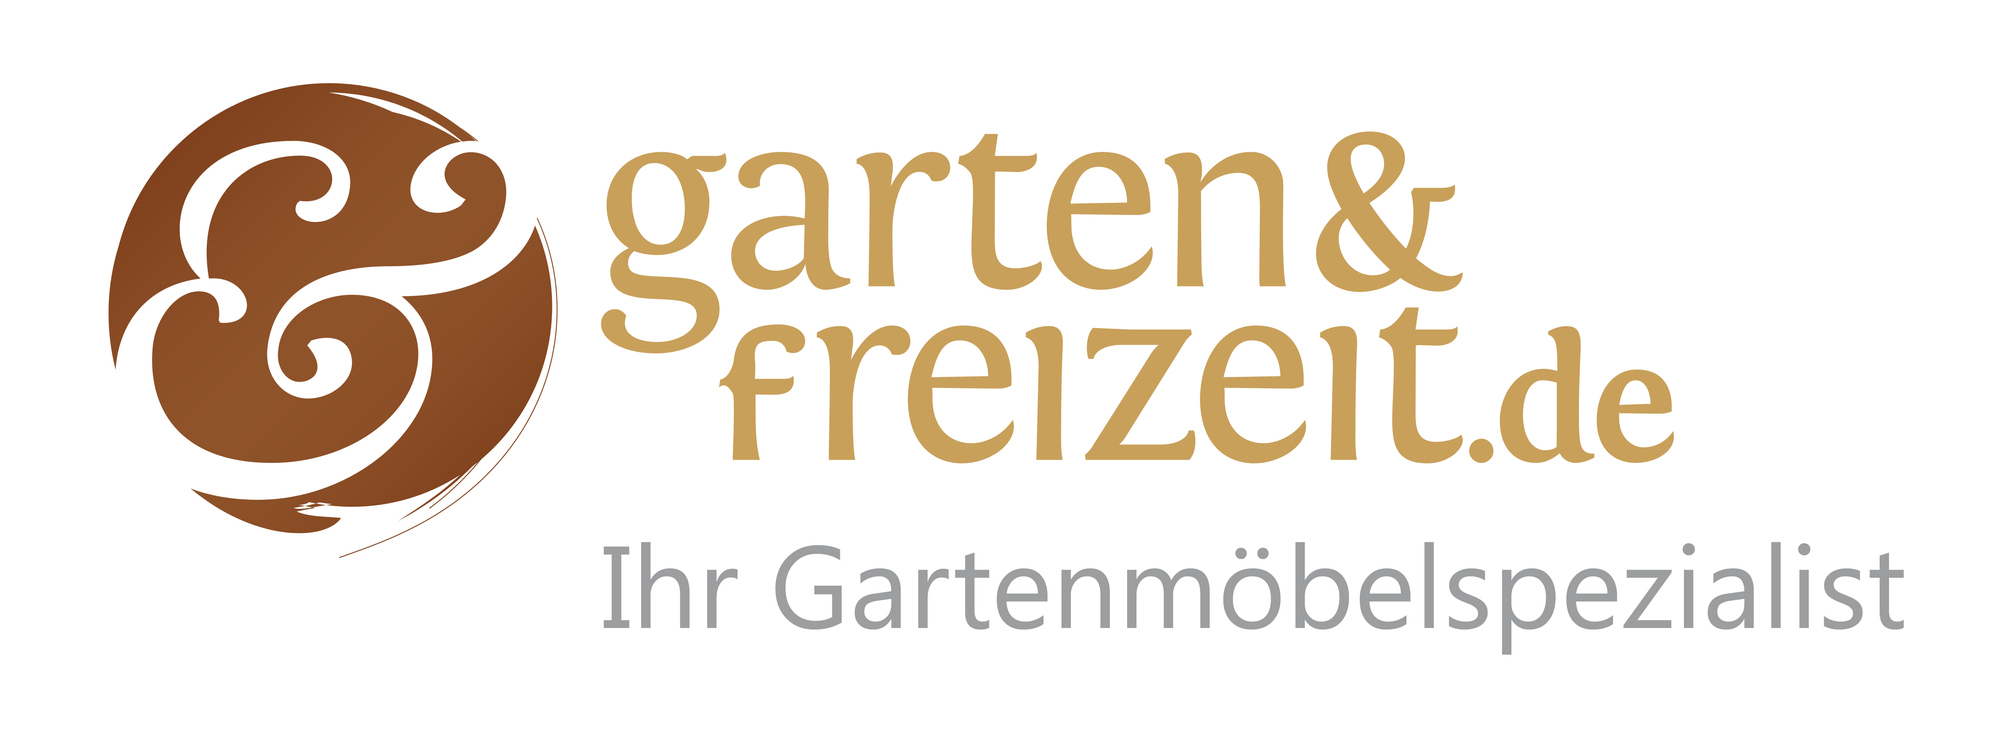 www.garten-und-freizeit.de